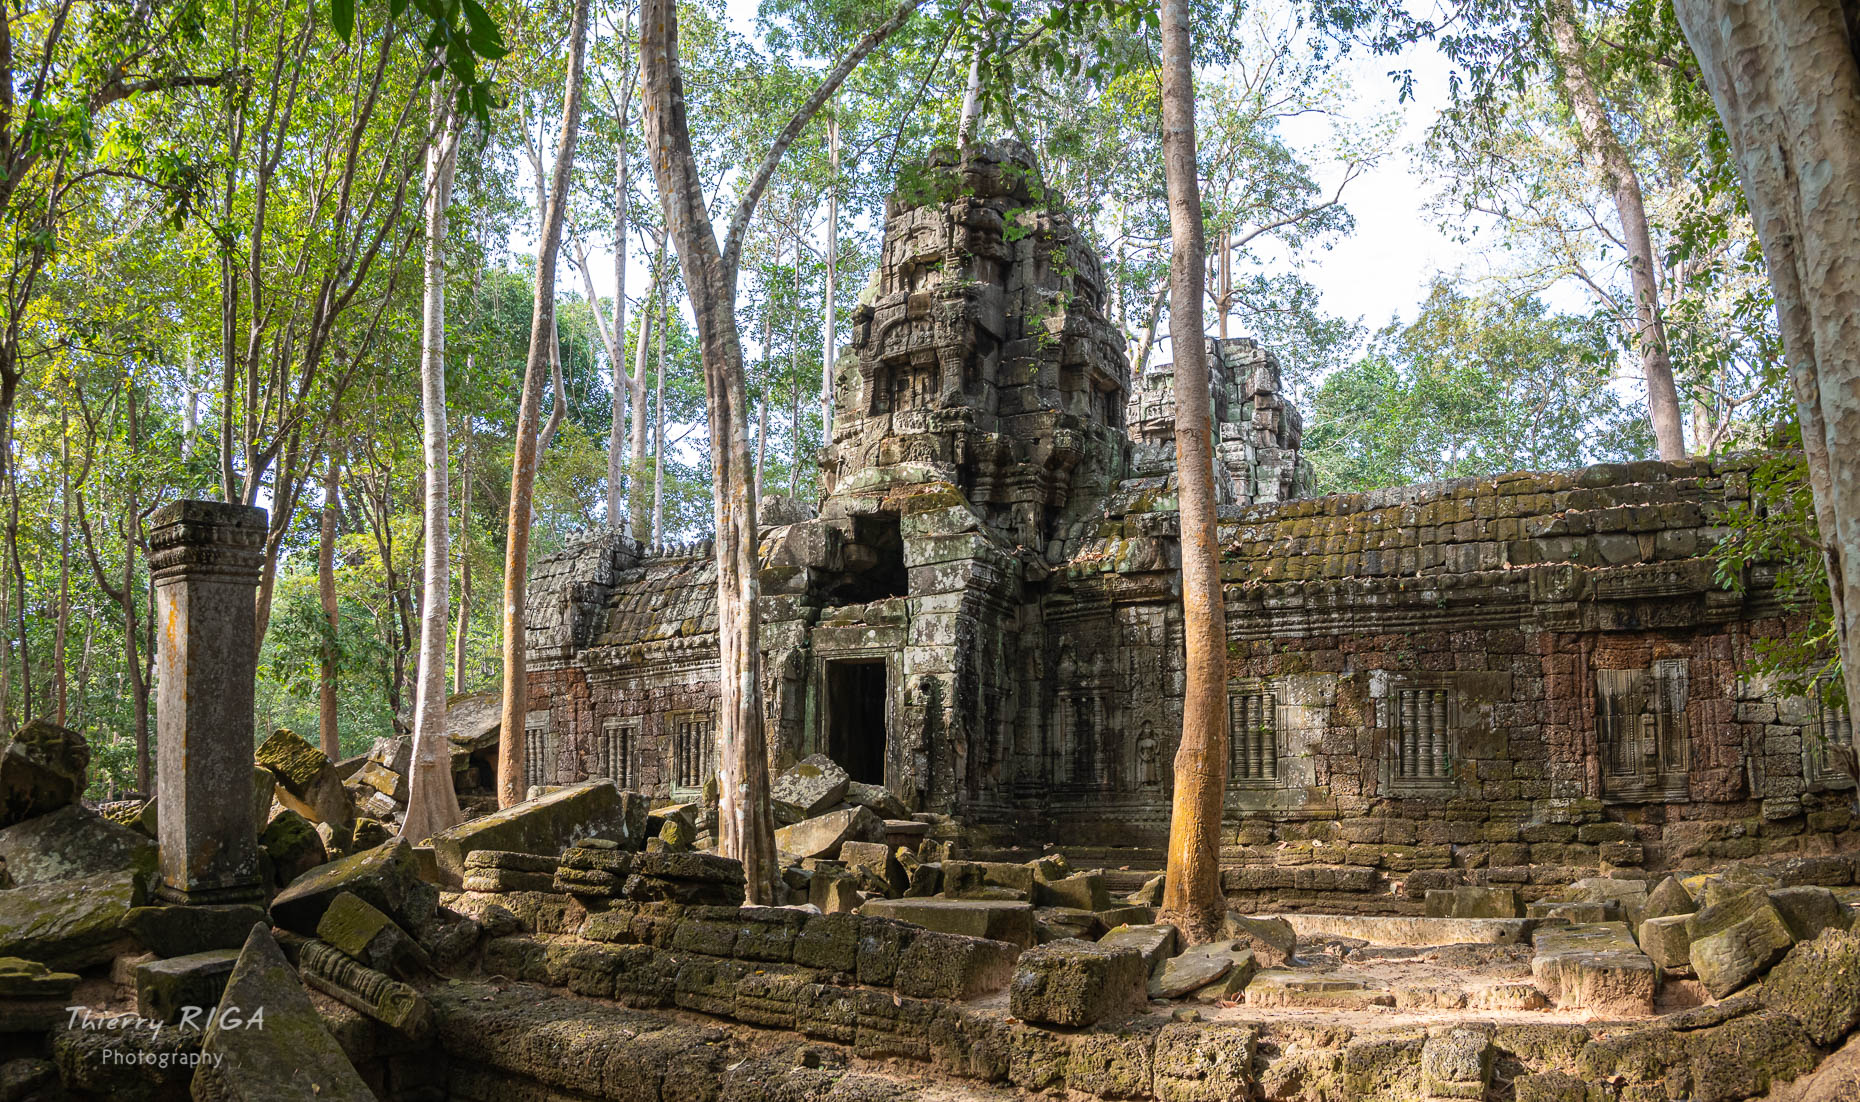 Angkor_Wild_Thierry_Riga_1180178-HDR-Pano